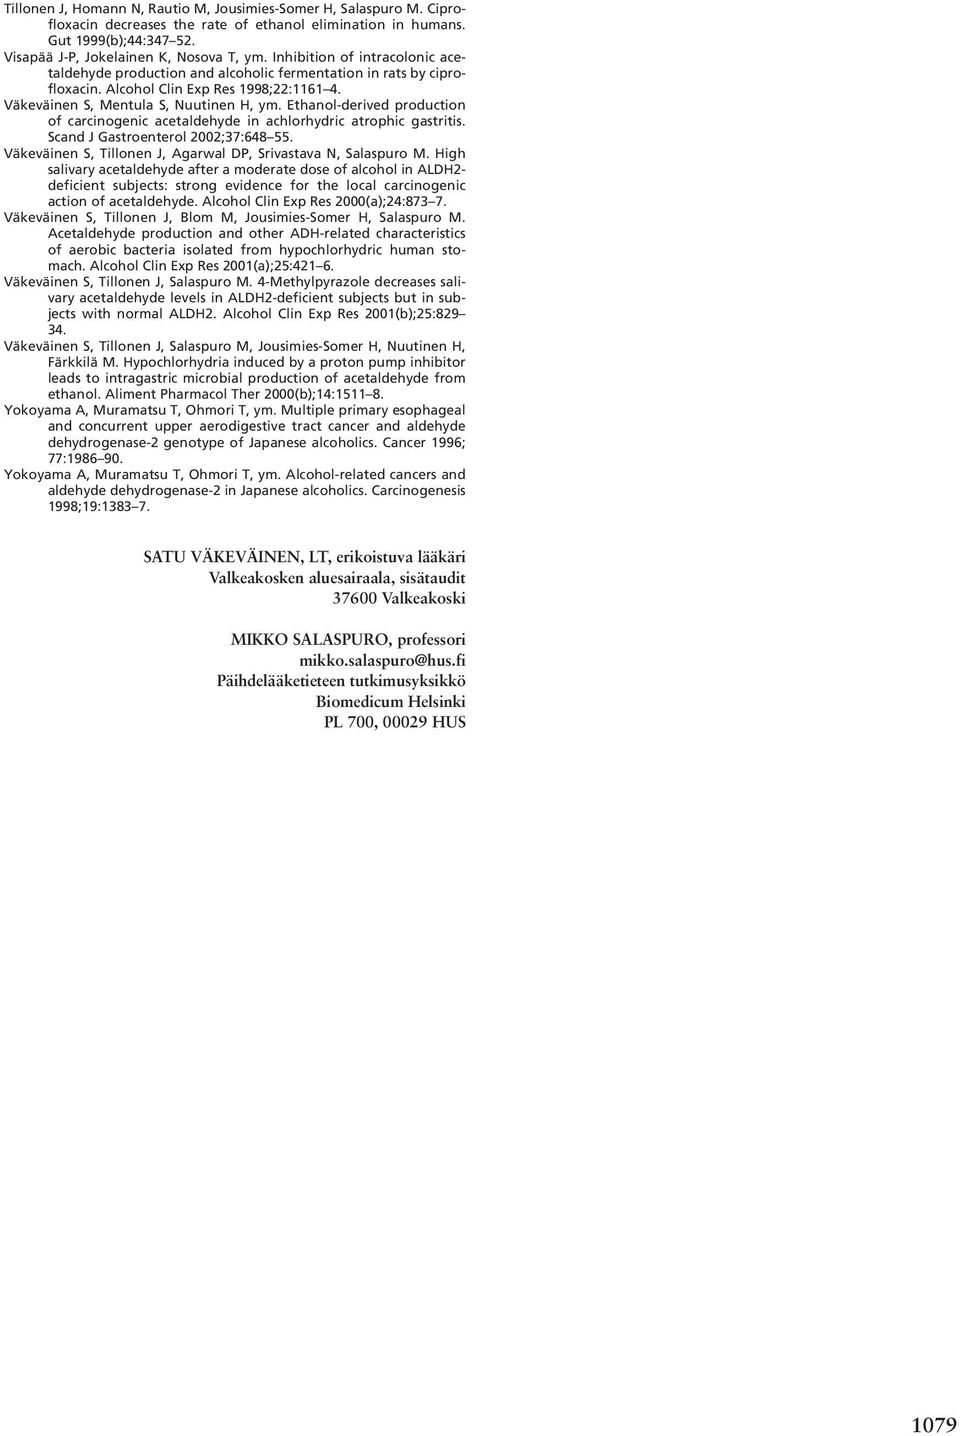 Ethanol-derived production of carcinogenic acetaldehyde in achlorhydric atrophic gastritis. Scand J Gastroenterol 2002;37:648 55. Väkeväinen S, Tillonen J, Agarwal DP, Srivastava N, Salaspuro M.